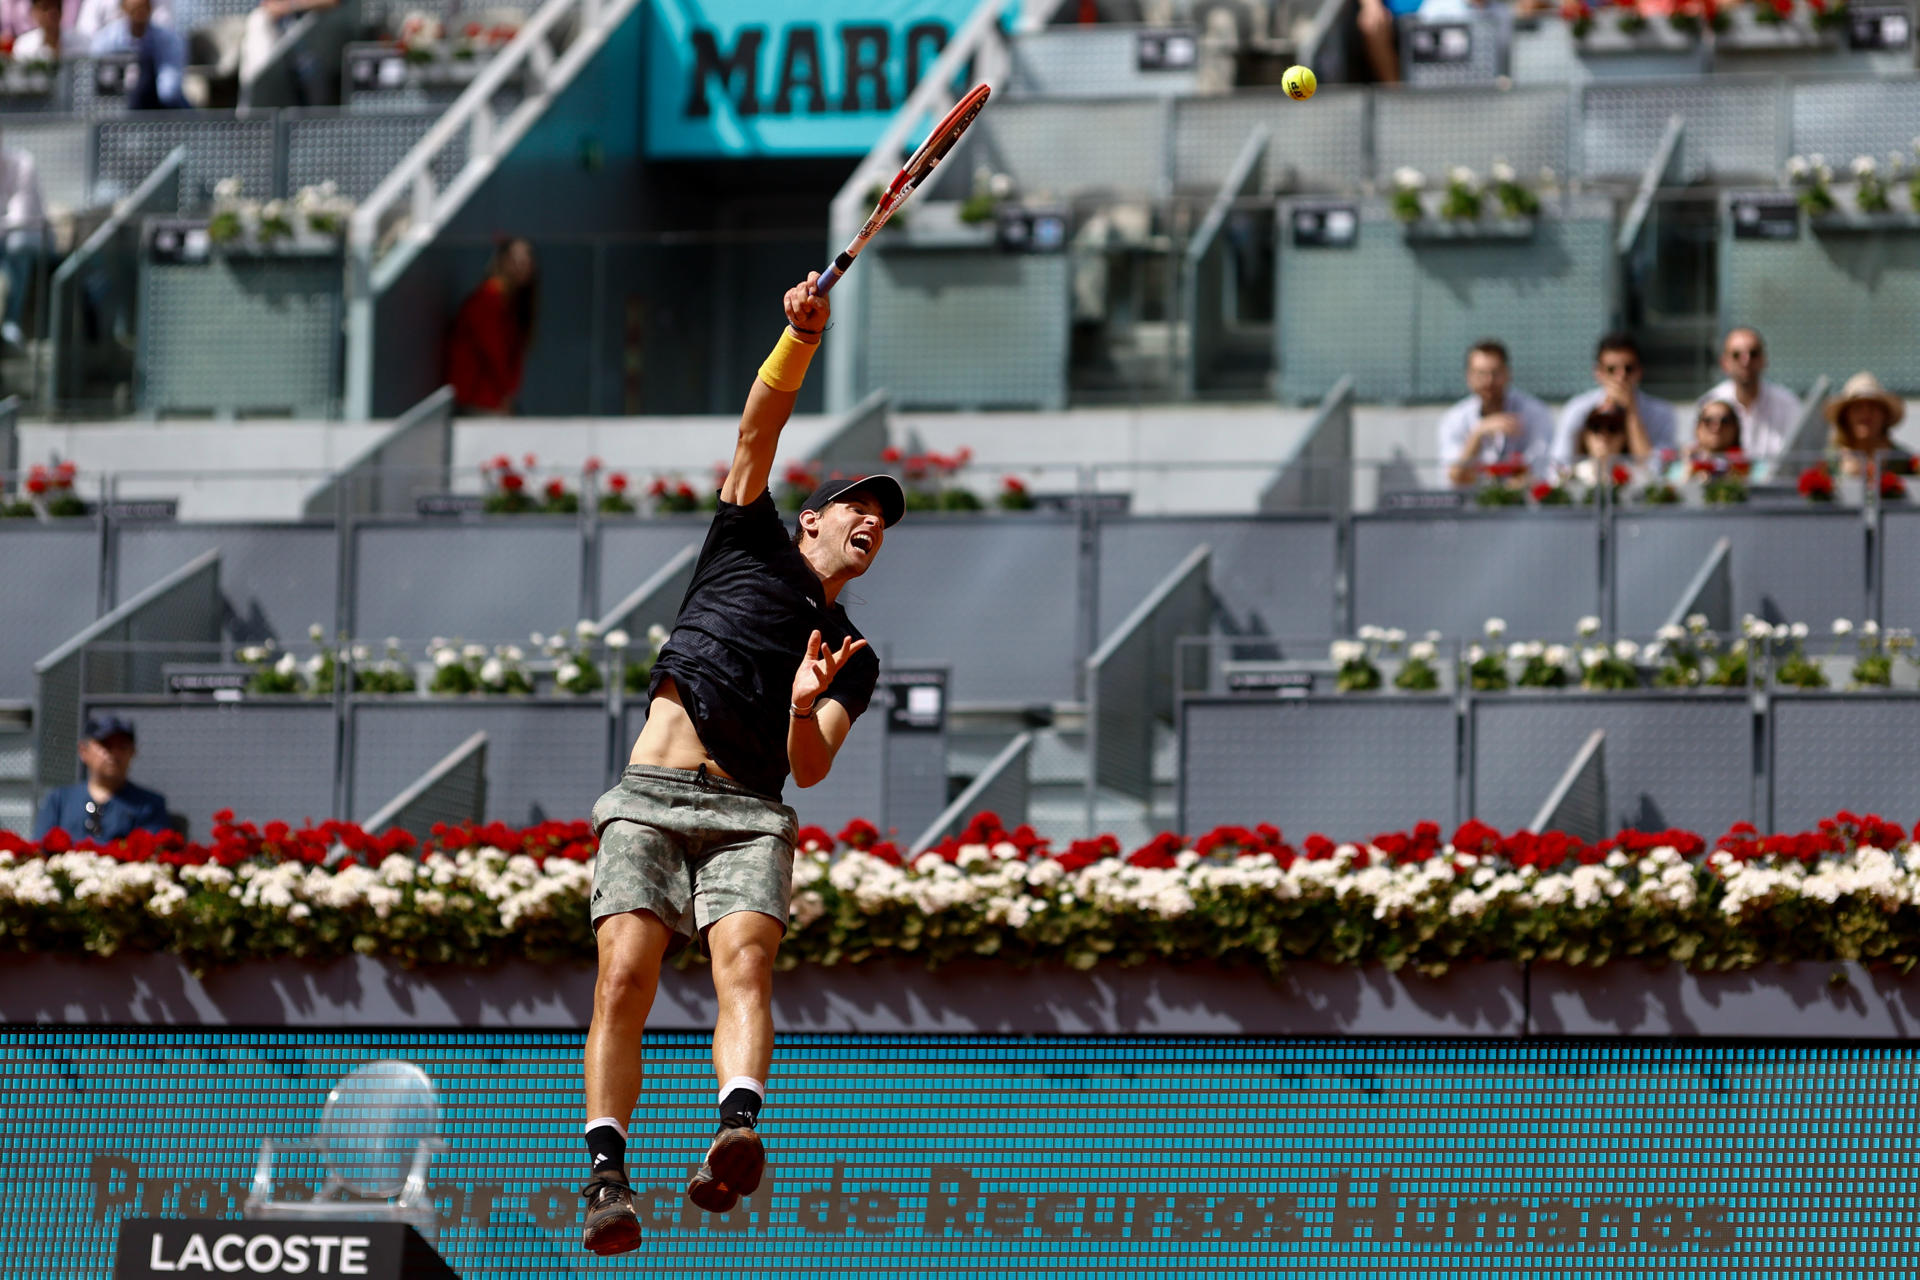 El tenista austriaco Dominic Thiem realiza un saque ante el británico Kyle Edmund durante el partido que enfrentó a ambos en las primeras rondas del Mutua Madrid Open que se celebra en la Caja Mágica en Madrid. EFE/ Rodrigo Jiménez
